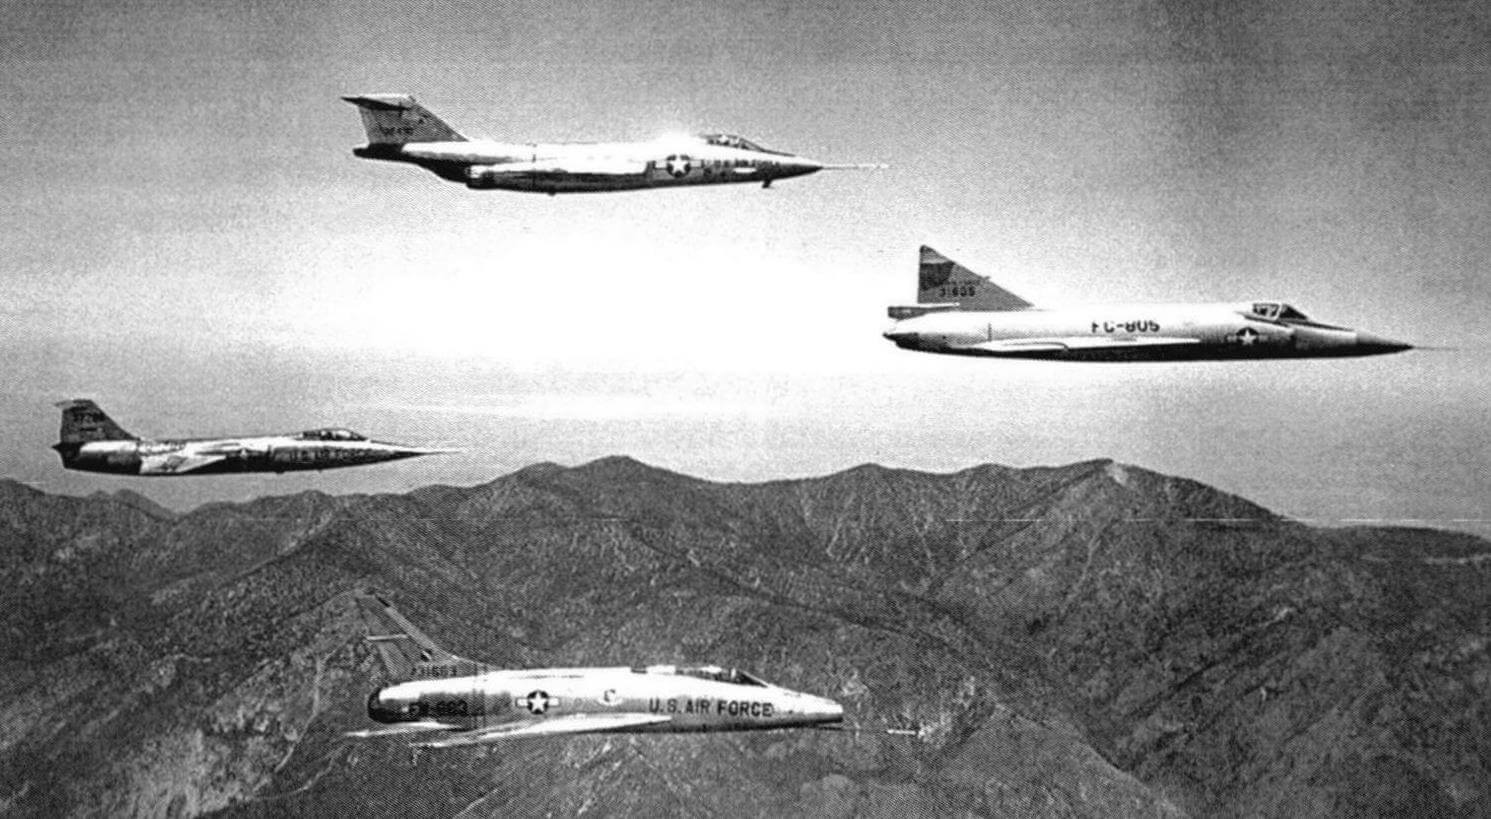 Основные самолеты сотой серии. Слева направо: F-104 «Старфайтер» (трапециевидное крыло), F-101 «Вуду», F-100 «Супер Сэйбр» (стреловидные крылья) и F-102А «Двойка» (треугольное крыло). Высоких скоростей конструкторы пытались достичь разными путями...